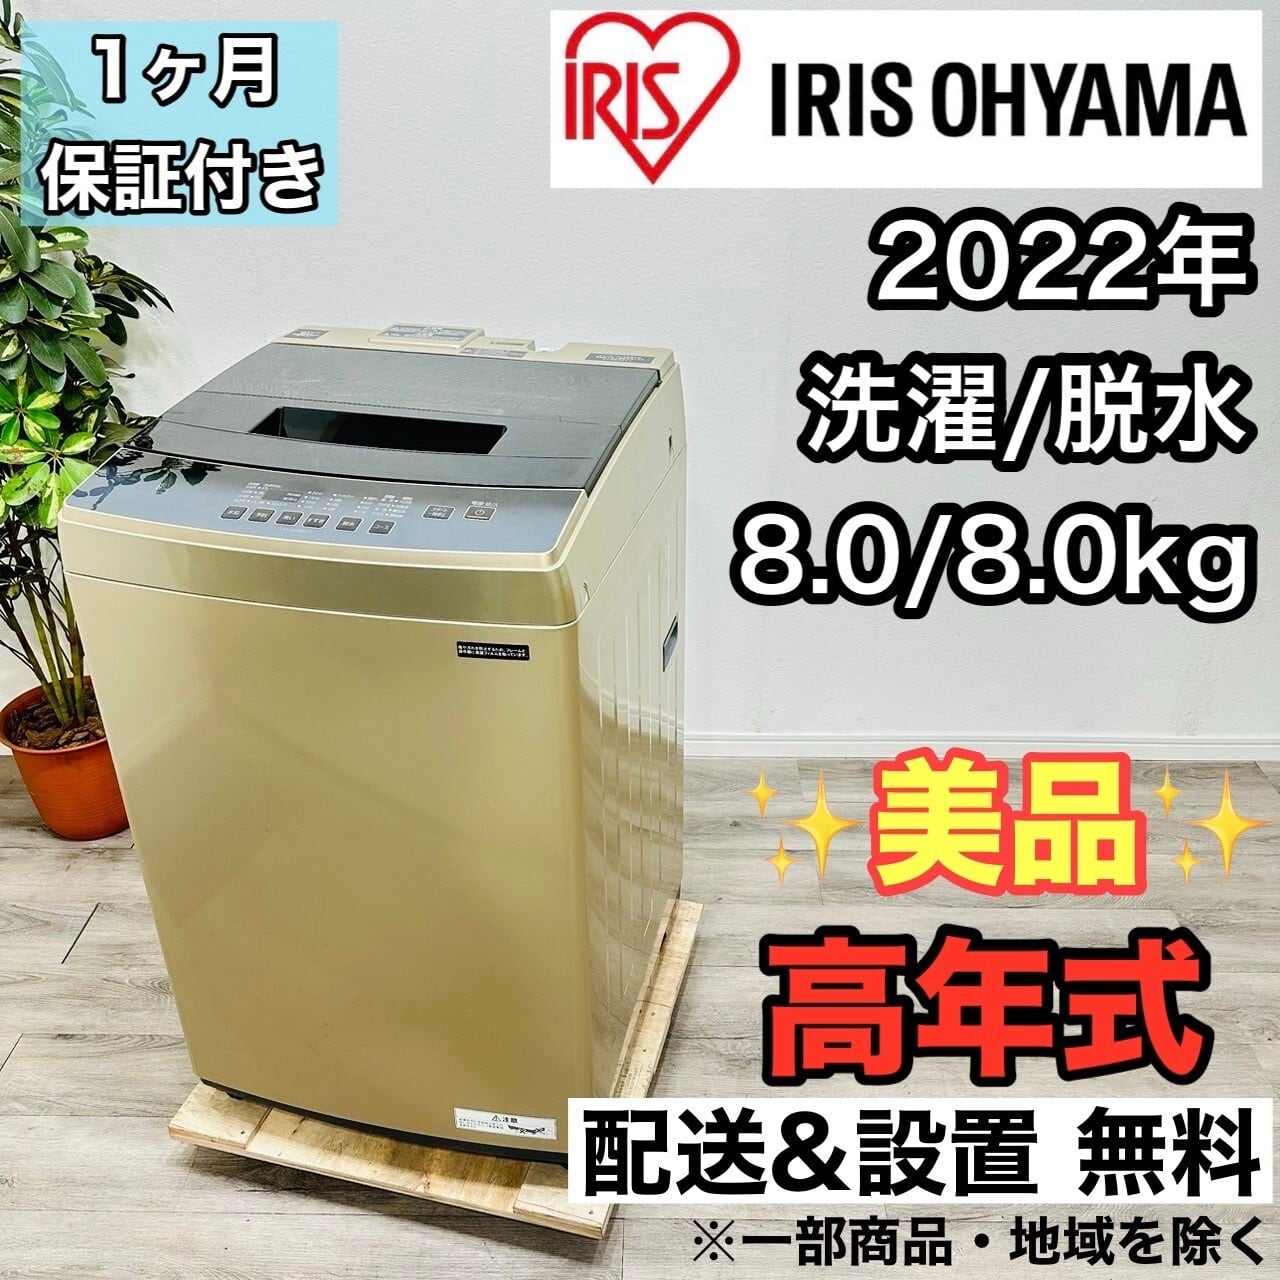 ♦️HITACHI a1862 洗濯機 7.0kg 2018年製 9♦️ | ネットでリサイクル ...